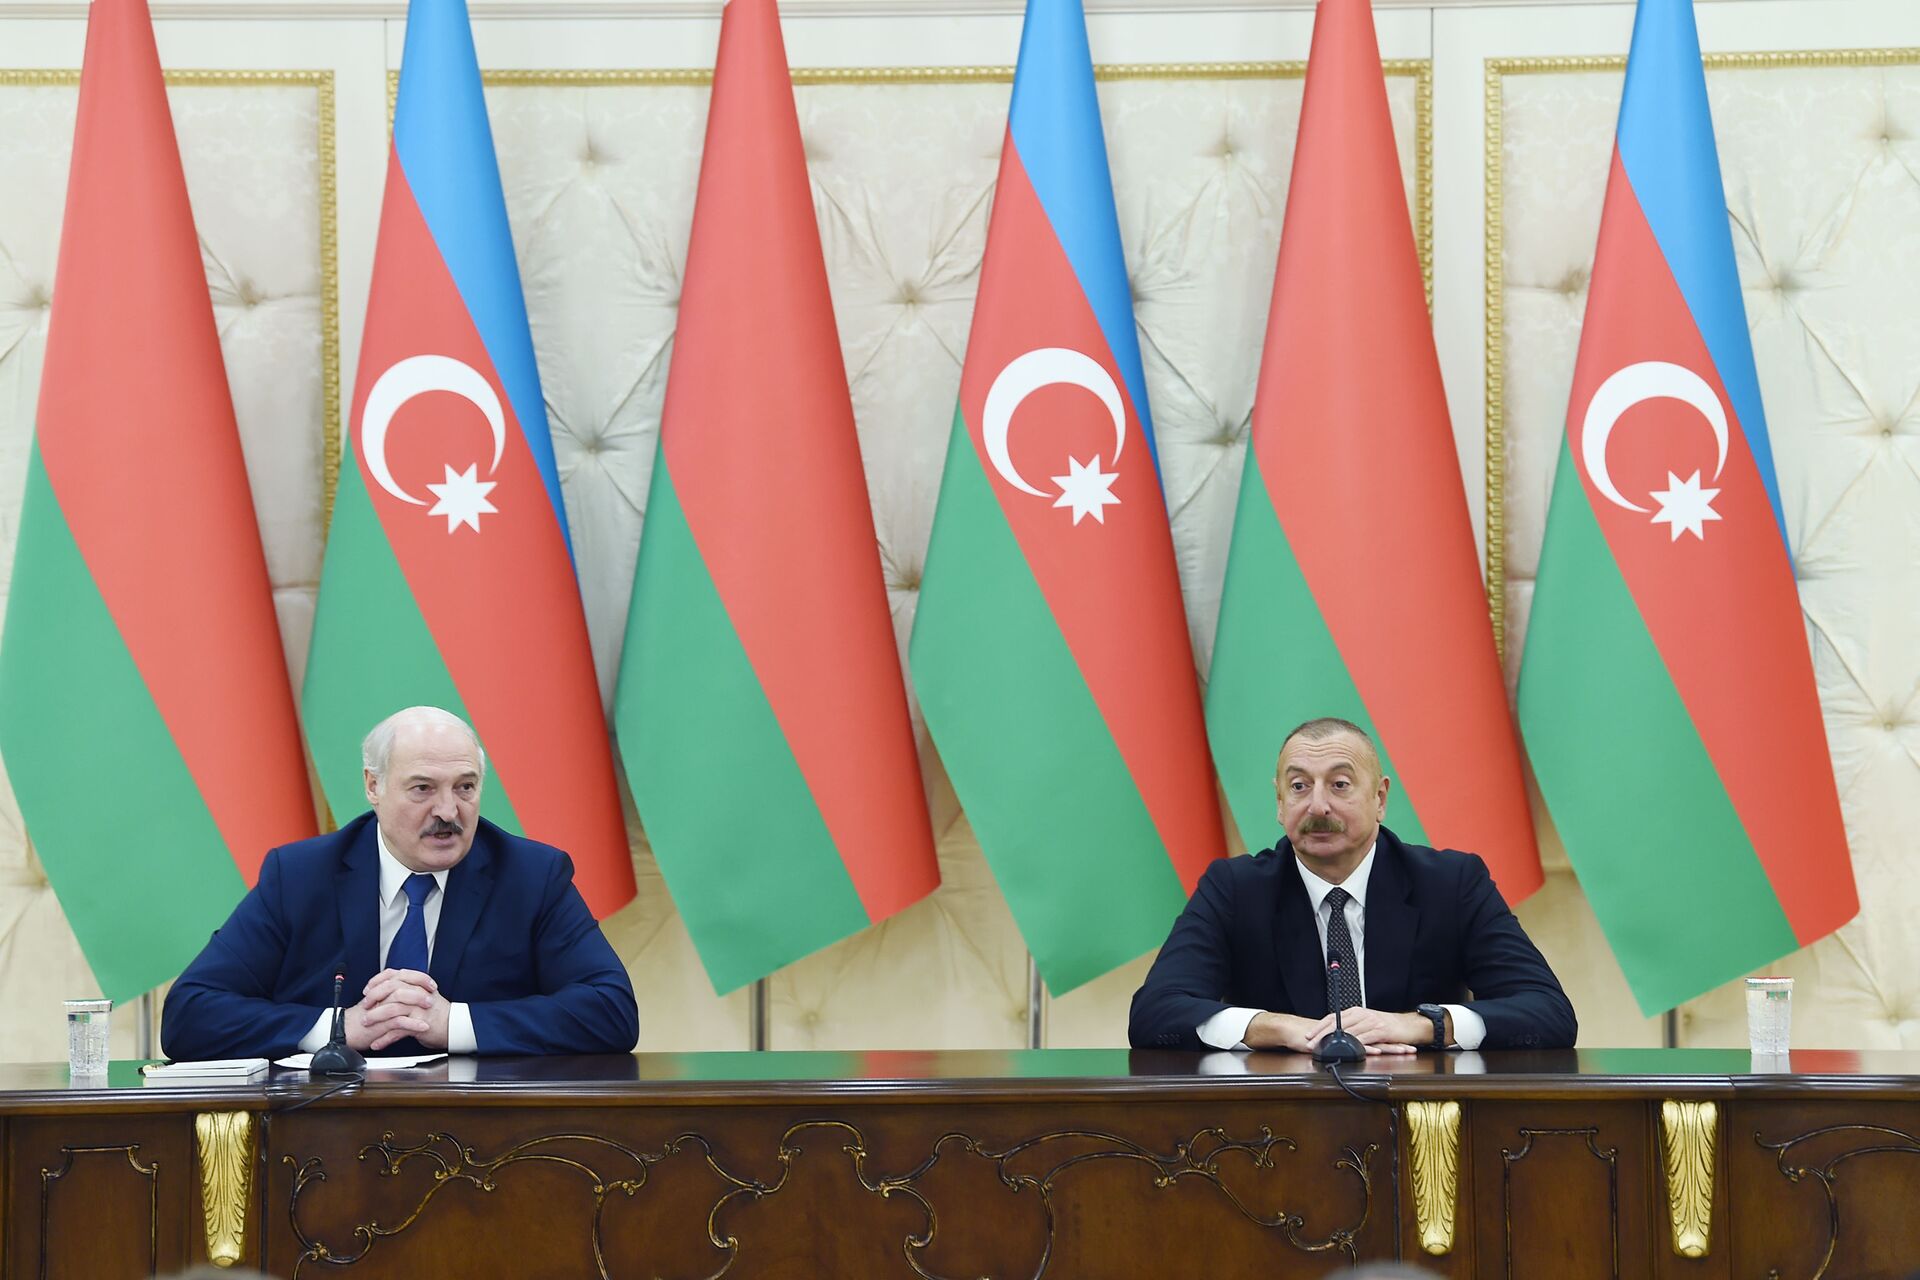 Азербайджан и Беларусь продолжат сотрудничество и поддержку - заявления глав государств - Sputnik Азербайджан, 1920, 15.04.2021